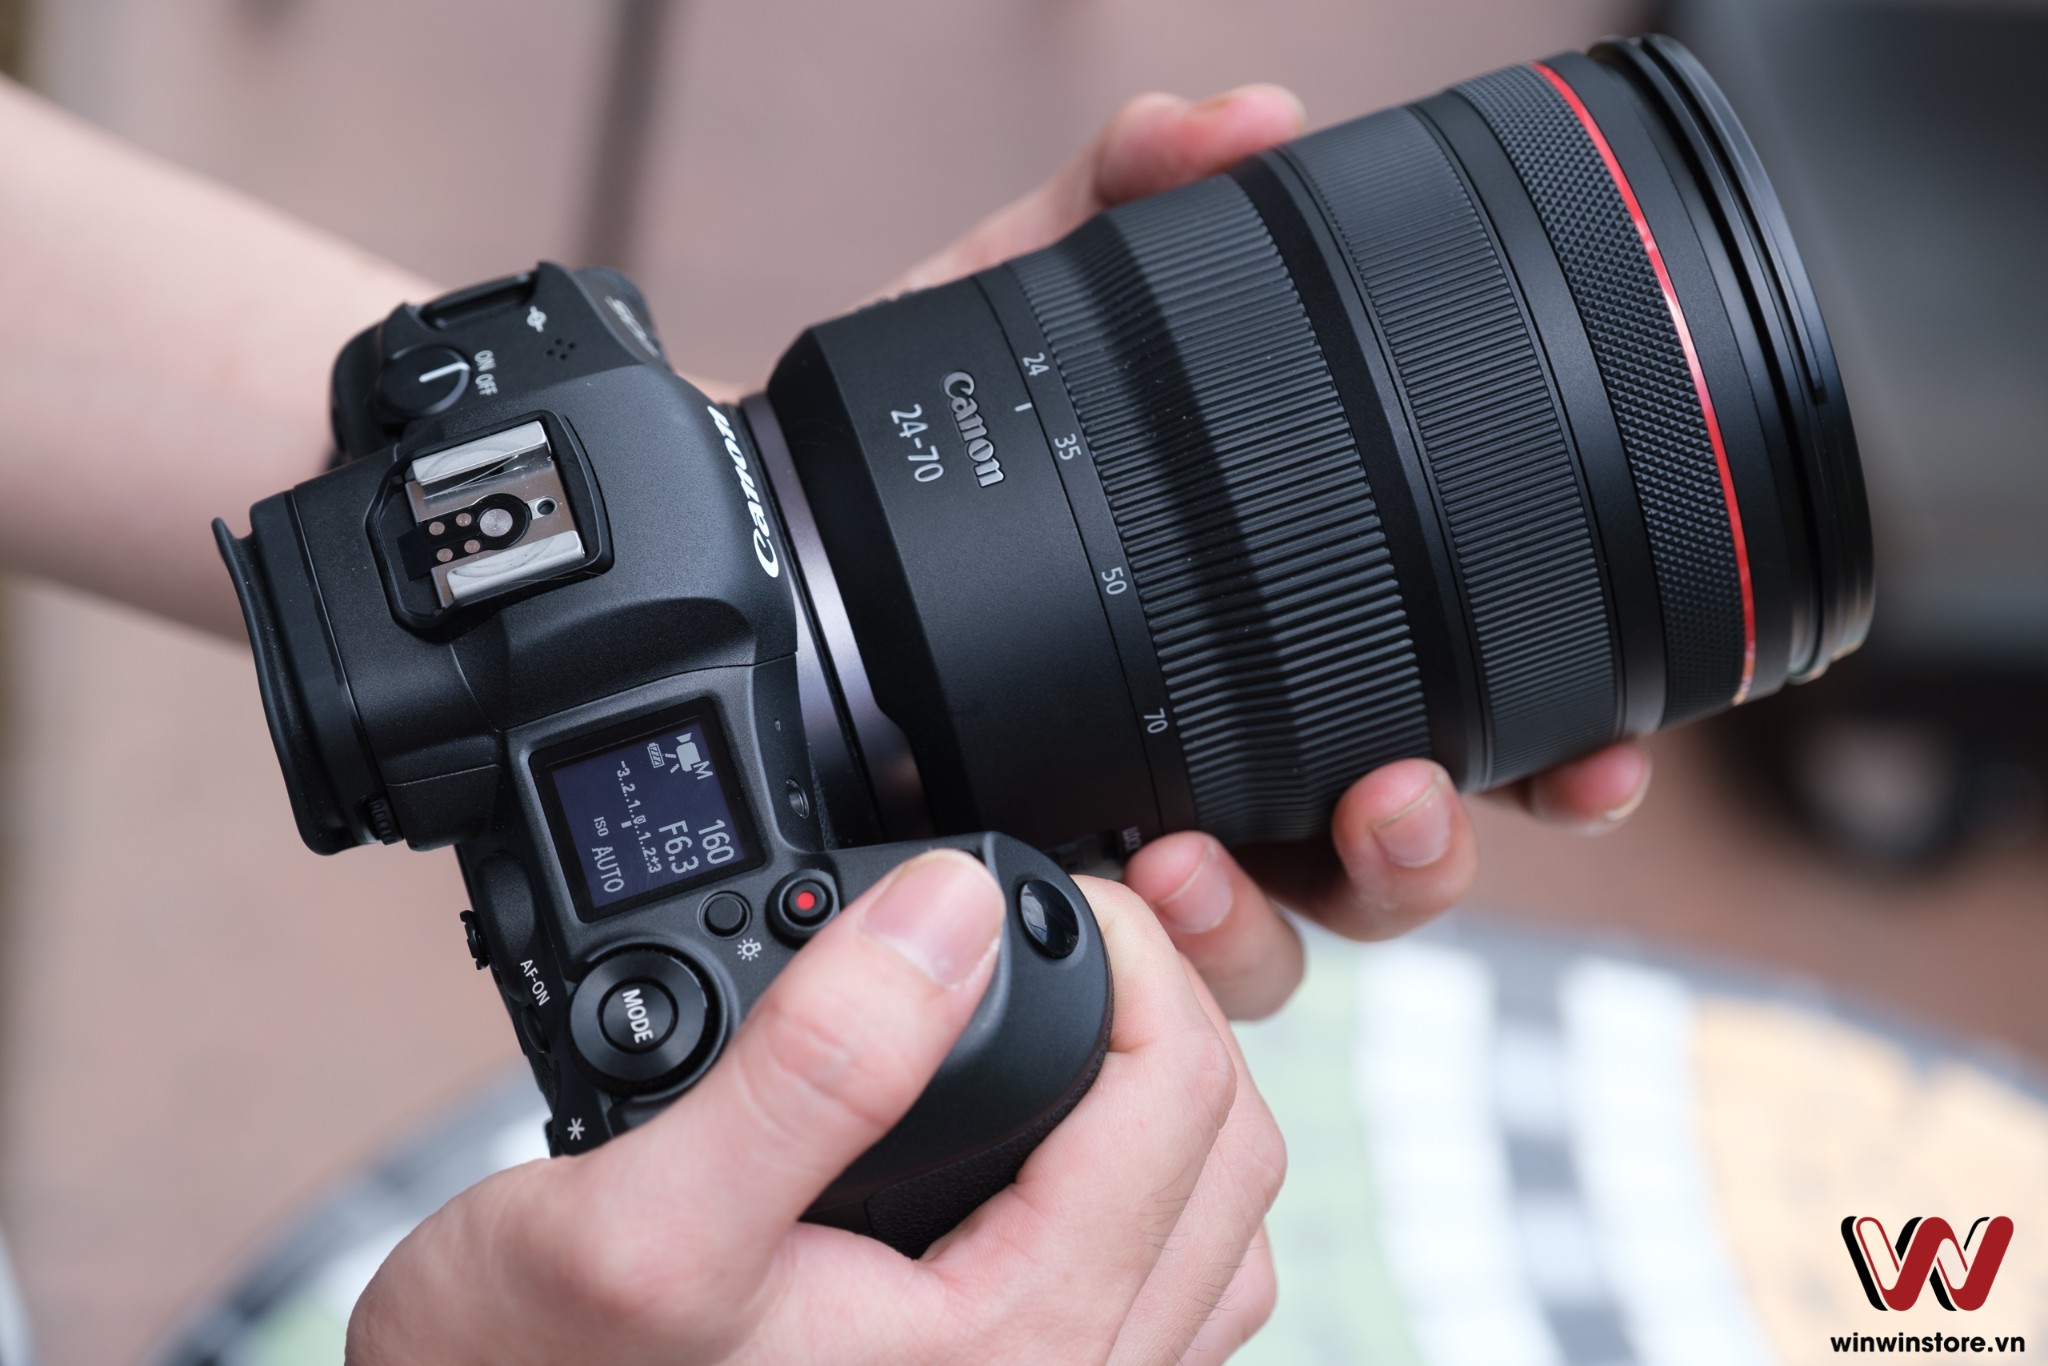 Canon đang thử nghiệm máy ảnh EOS R5s với cảm biến 90MP